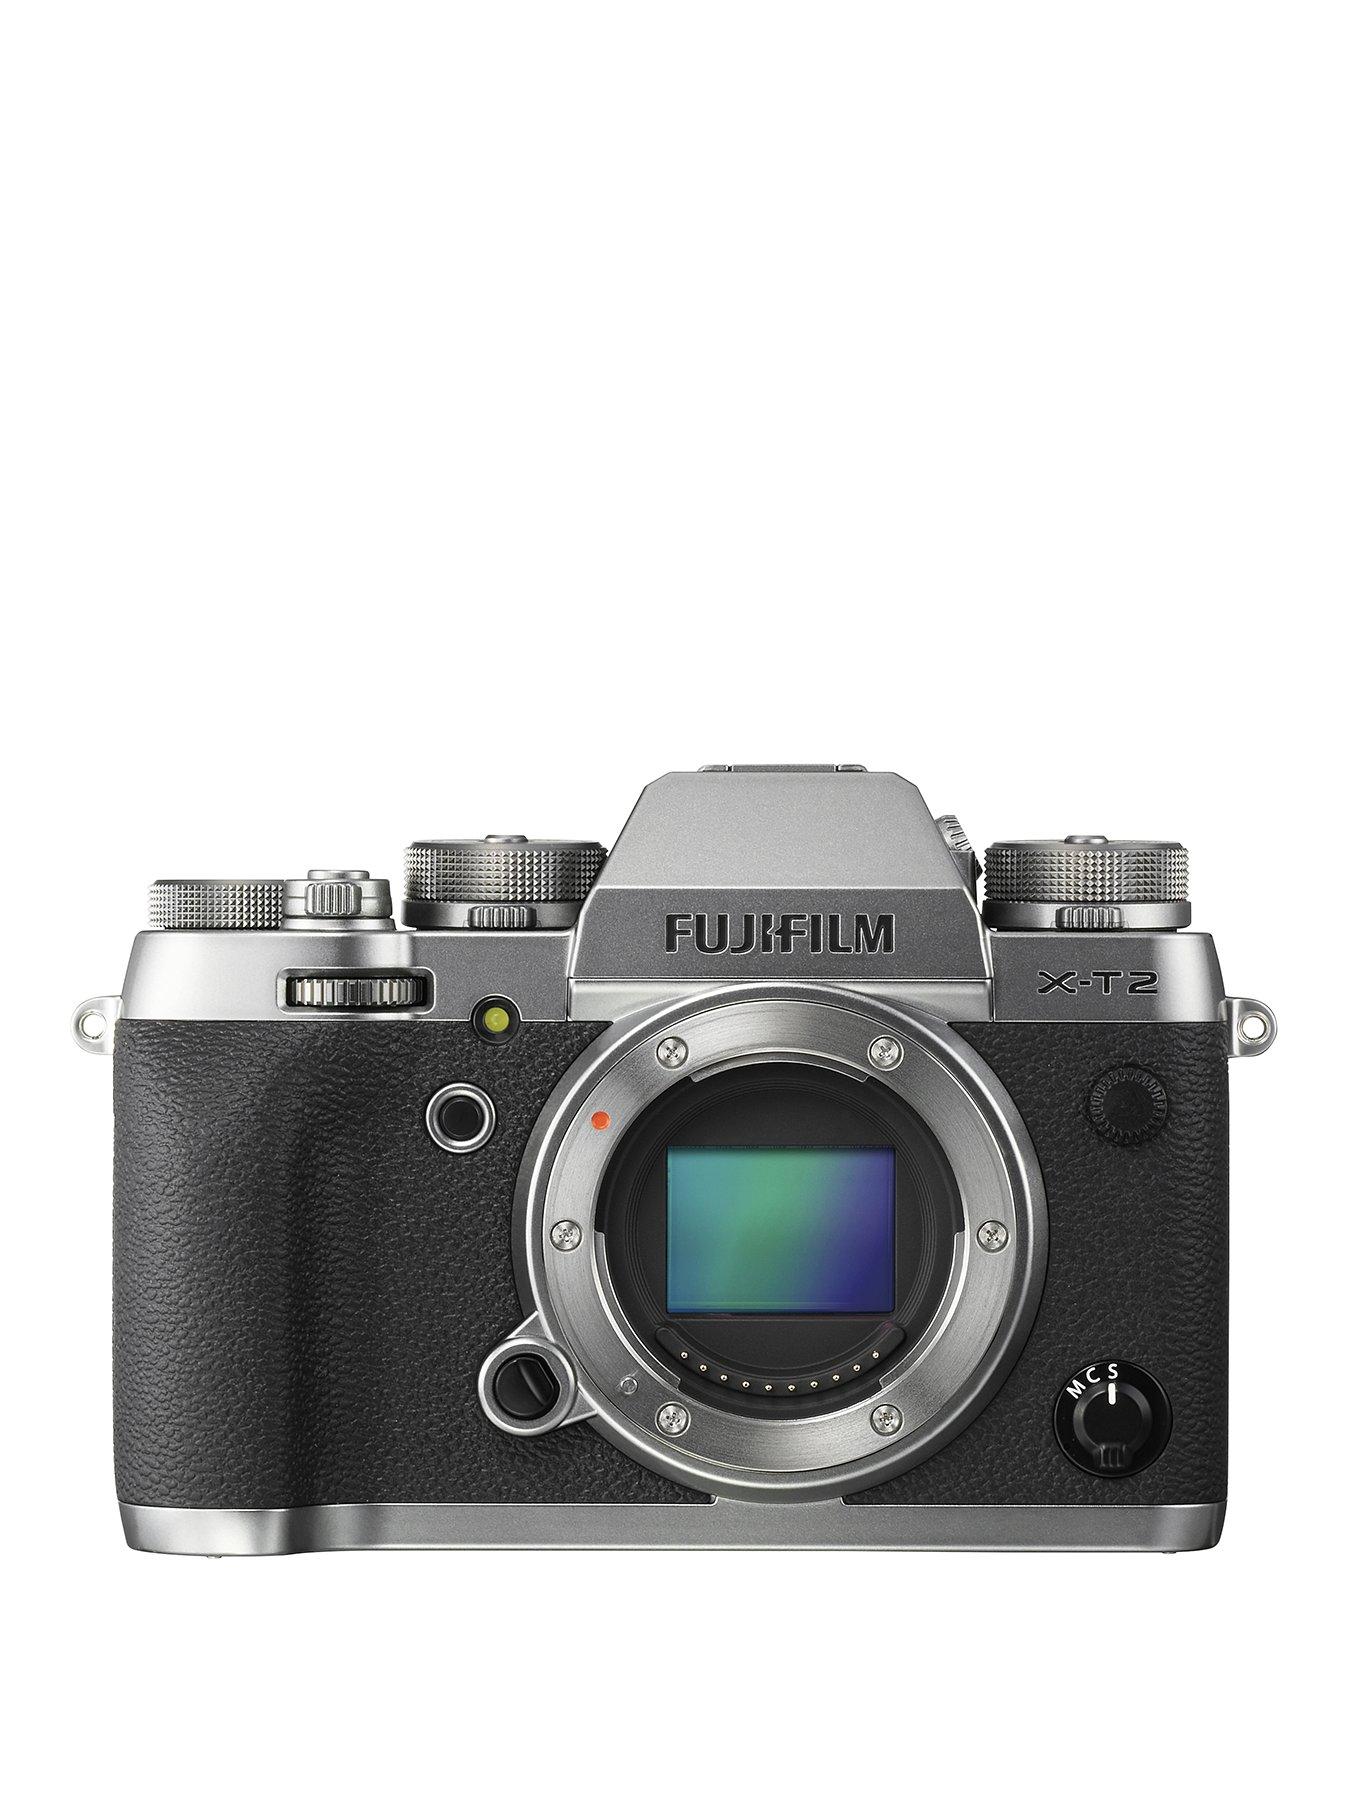 Fujifilm Fujifilm X-T2 Camera Graphite Silver Body Only 24.3Mp 3.0Lcd 4K Fhd